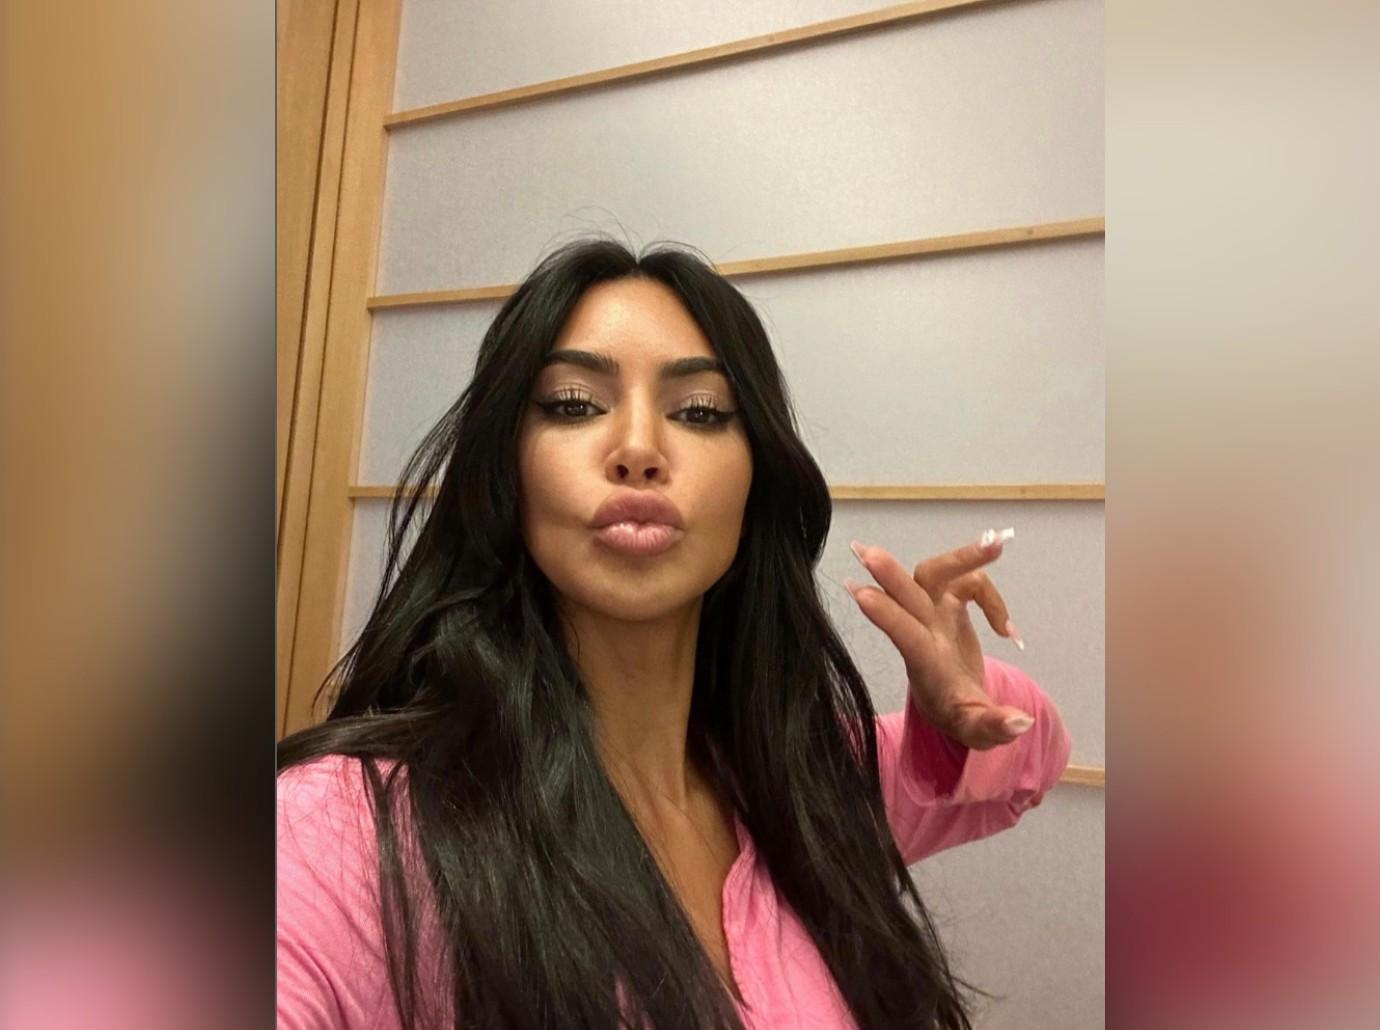 Kim Kardashian Mocked Over Latest Instagram Selfie & Ditzy Caption